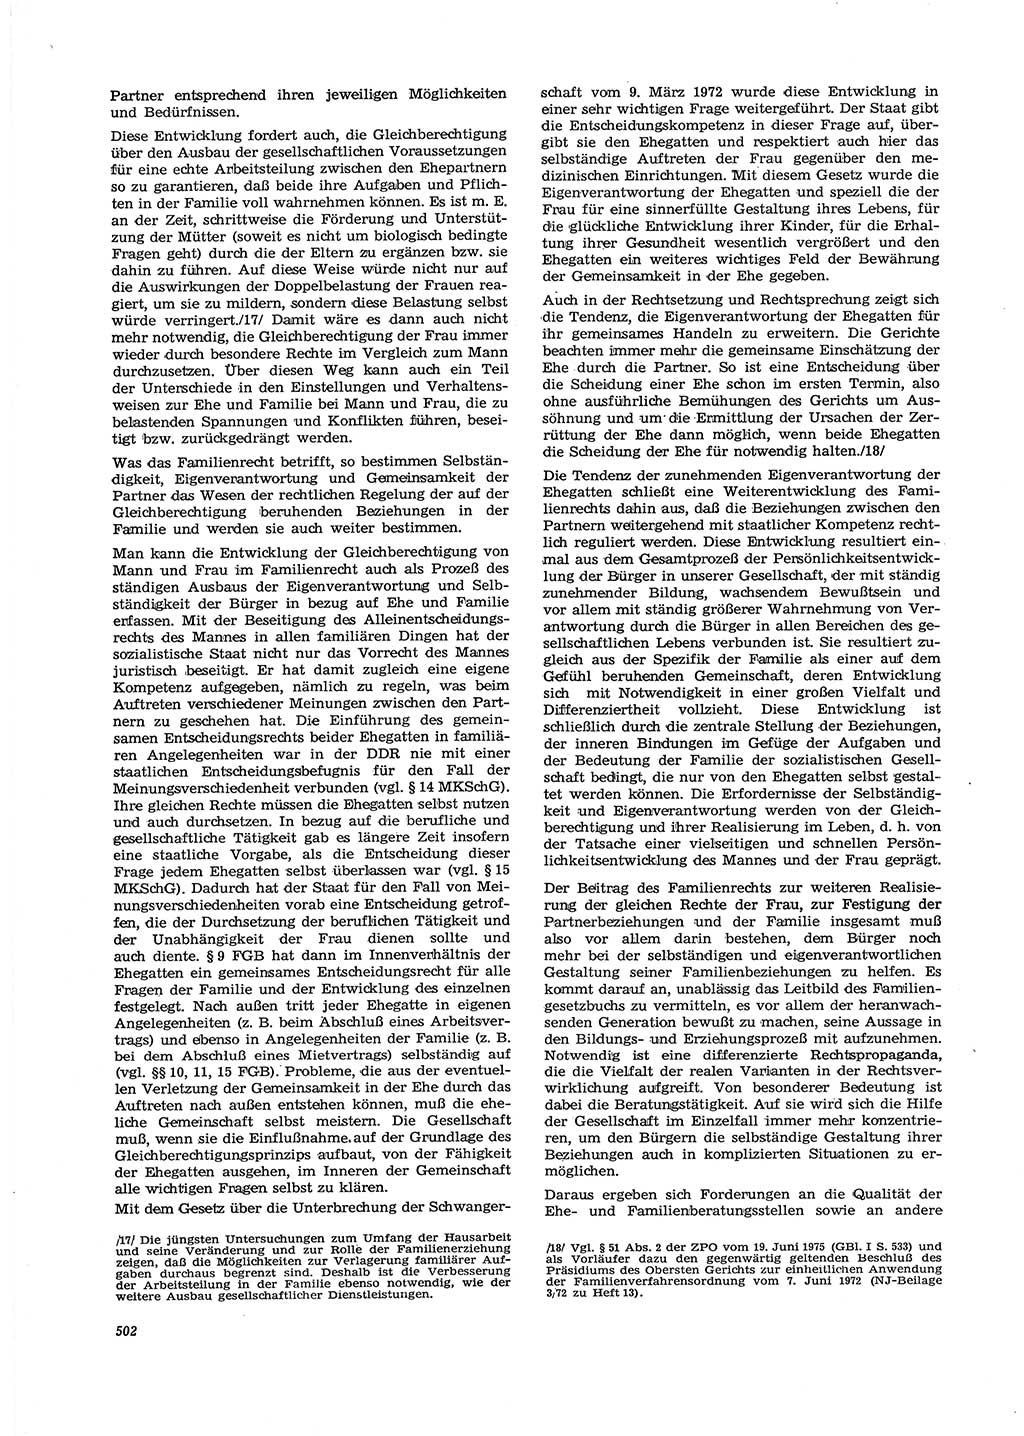 Neue Justiz (NJ), Zeitschrift für Recht und Rechtswissenschaft [Deutsche Demokratische Republik (DDR)], 29. Jahrgang 1975, Seite 502 (NJ DDR 1975, S. 502)